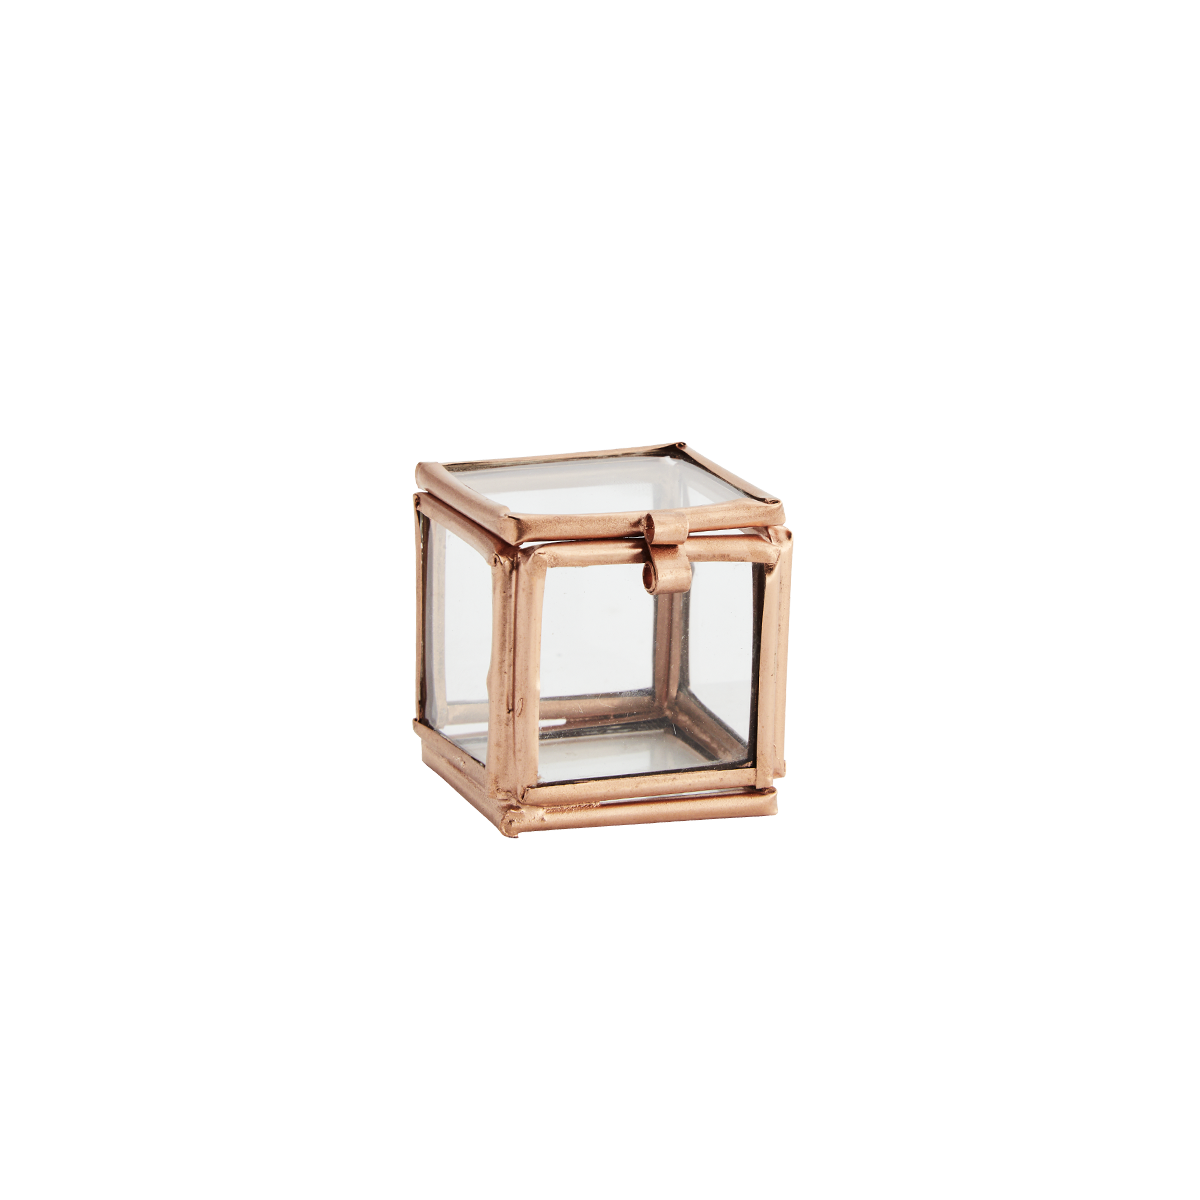 Quadratic glass box